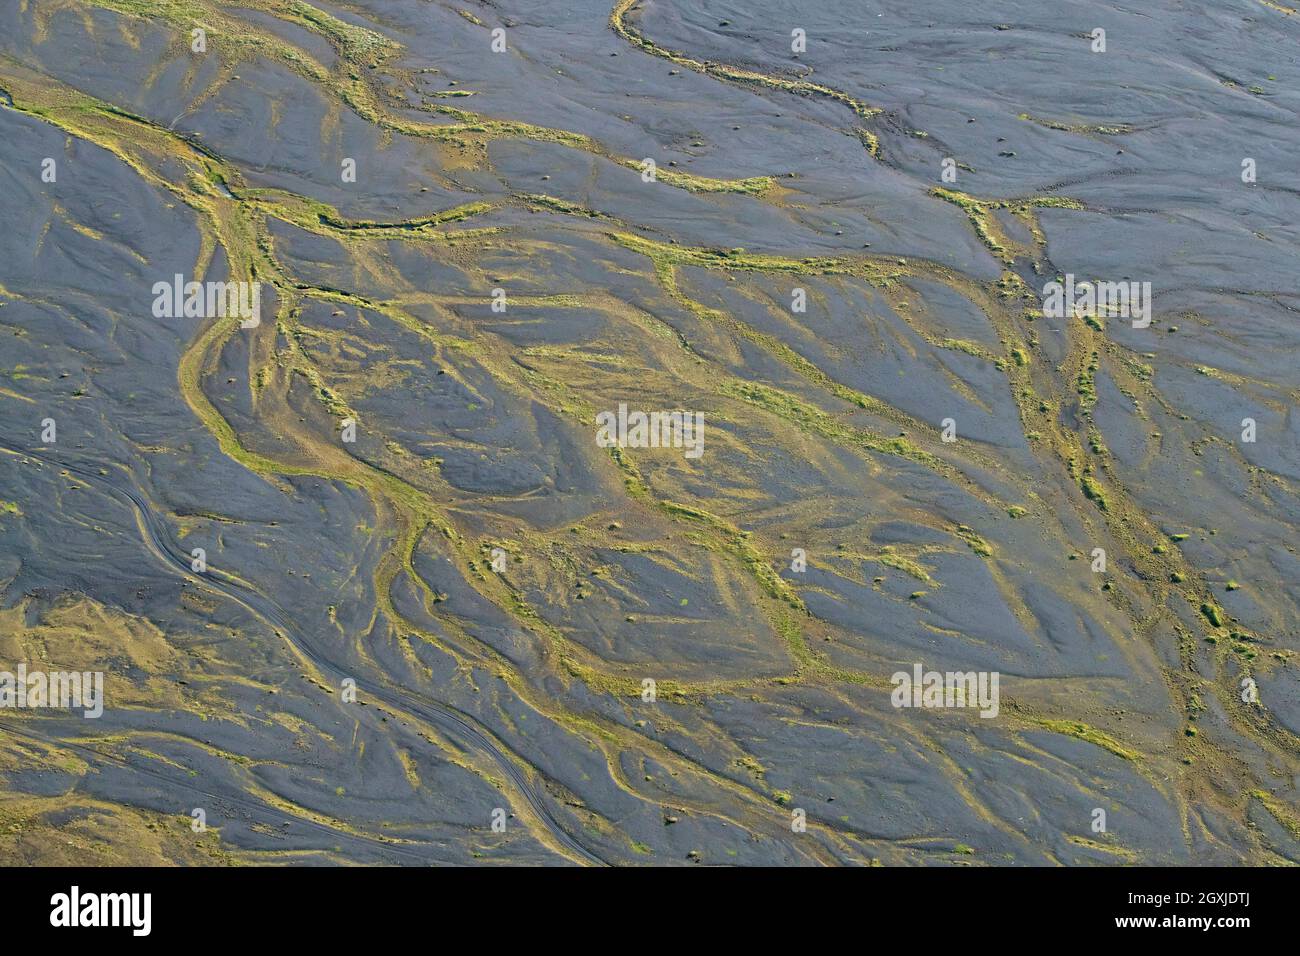 Vista aerea sul delta del ghiacciaio Þjórsá / Thjorsa in estate, il fiume più lungo d'Islanda Foto Stock